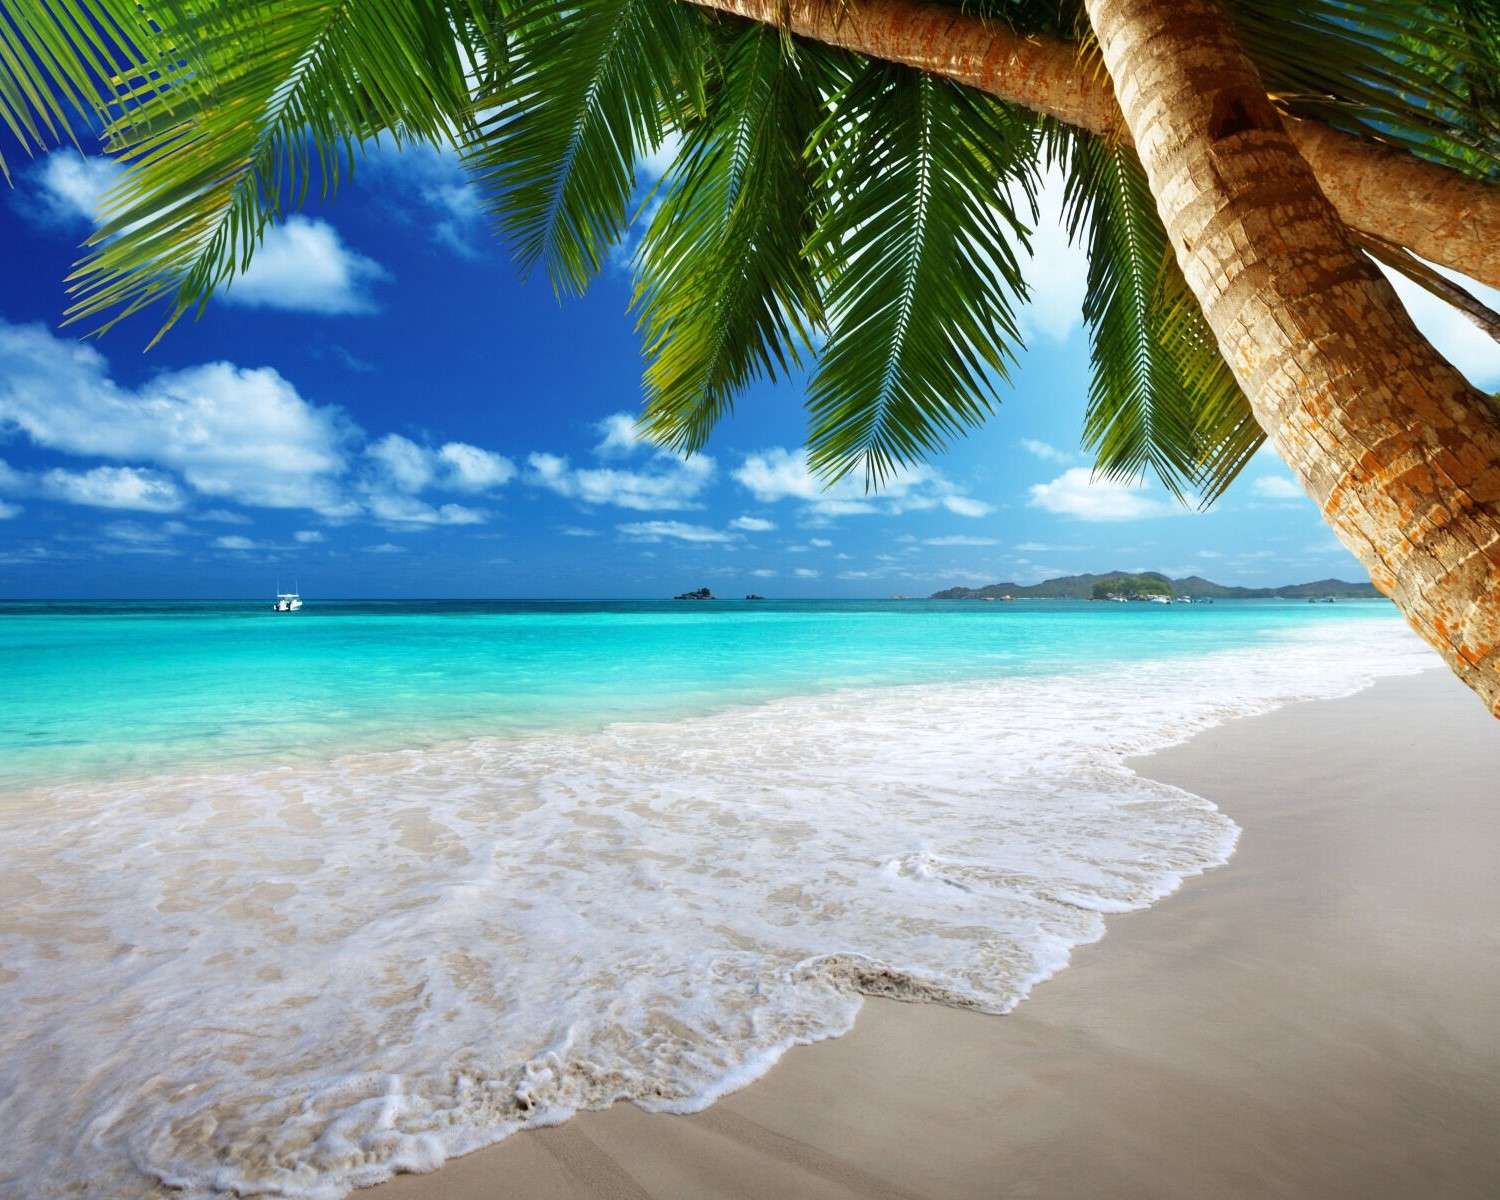 Песчаный пляж в тропиках пазл онлайн